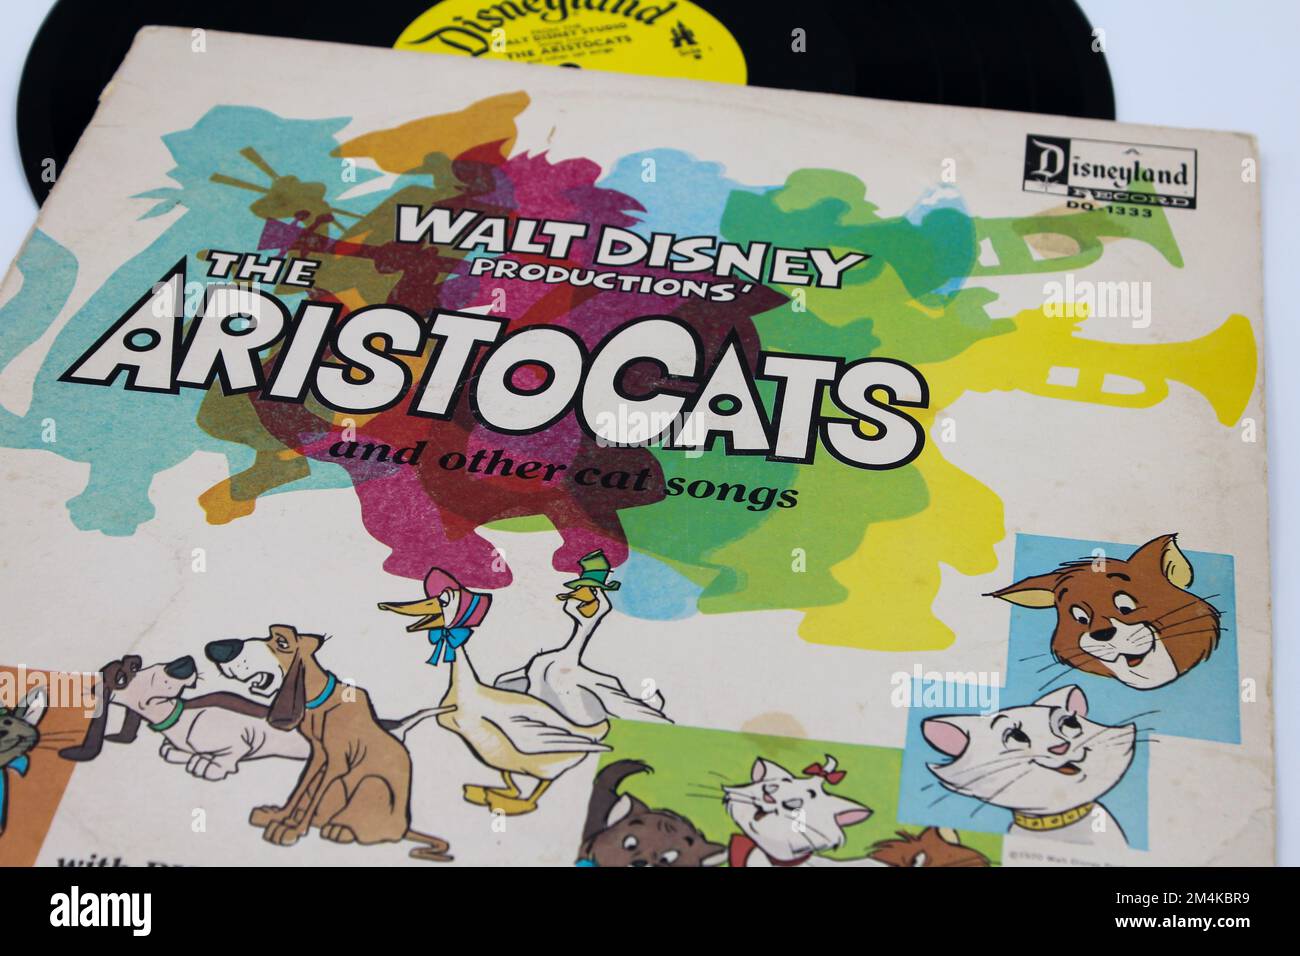 Disney's Aristocats Movie Soundtrack music album on vinyl record LP disc Stock Photo